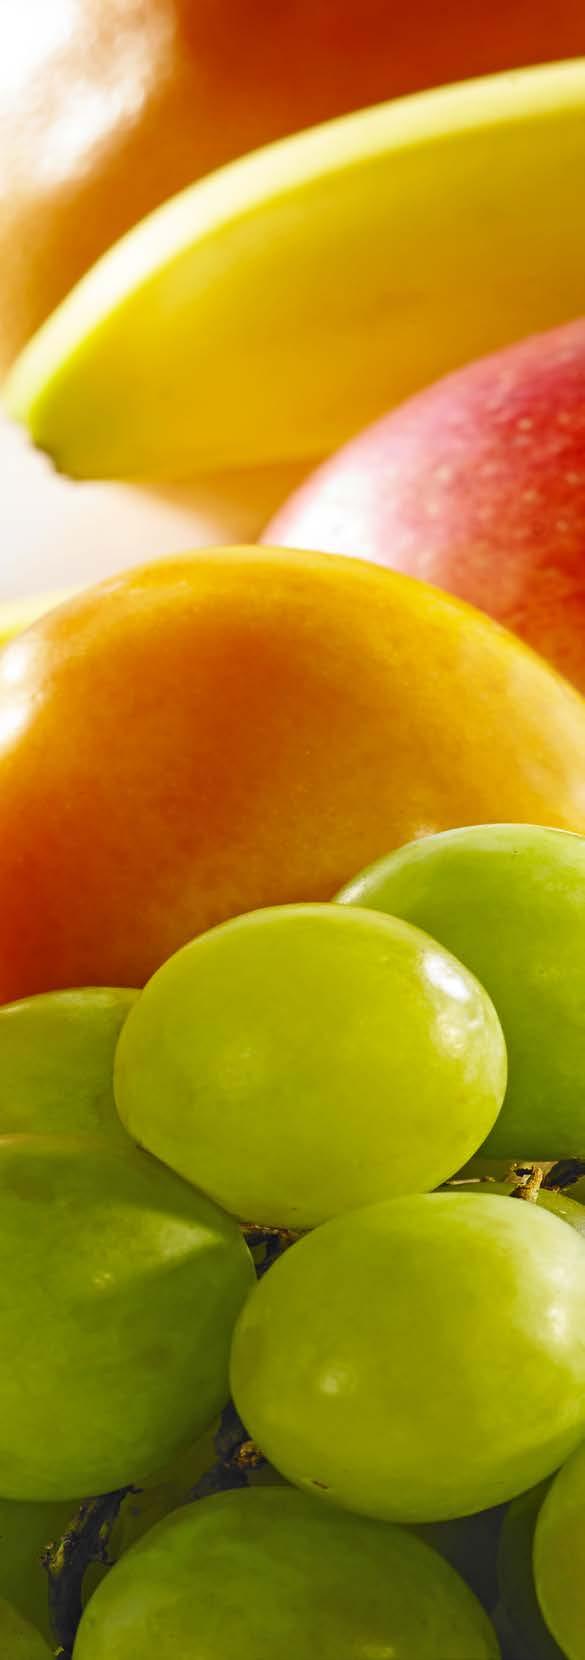 Tropikalna multiwitamina SKŁADNIKI: 4 porcje 2 jabłka 1 pomarańcza 1/2 ananasa 1/2 mango 1 brzoskwinia 3 morele 1 mały banan 1 mała kiść ciemnych winogron 1 cytryna KOKTAJL OWOCOWY SPOSÓB WYKONANIA: